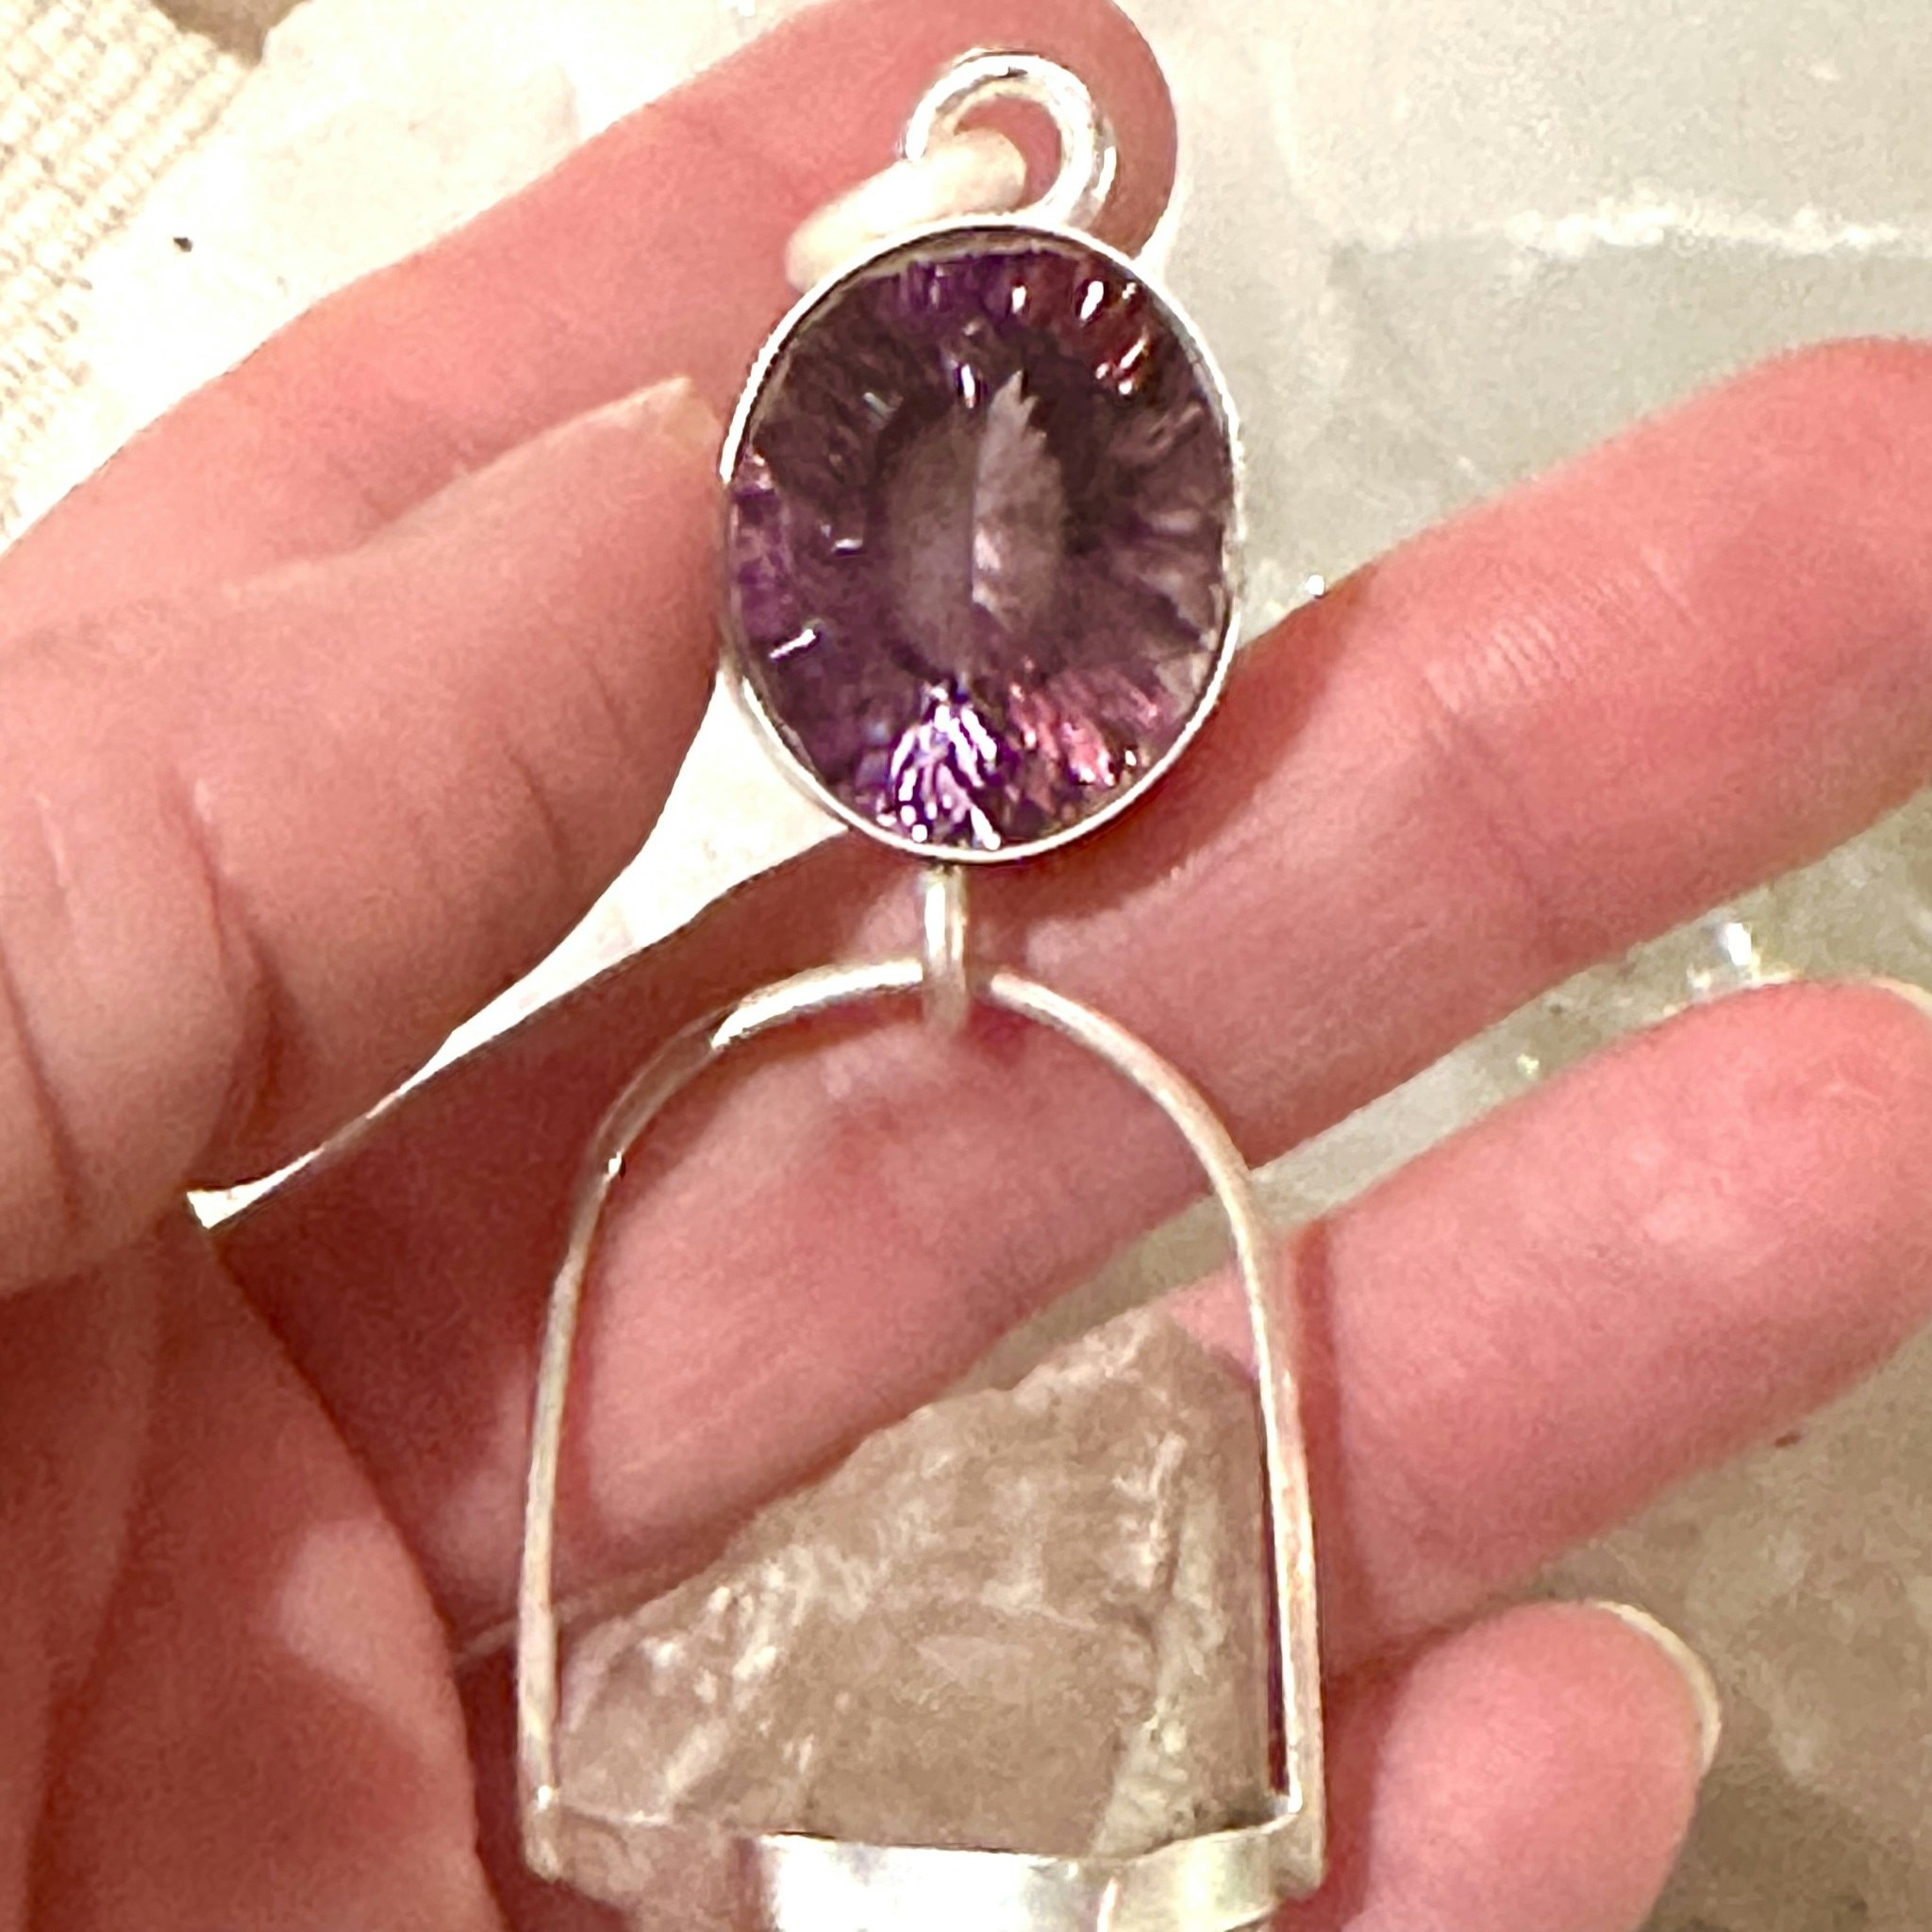 Facettslipad ametist med dubbelterminerad Enhydro från Himalaya med en liten bäbis kristall på sidan.